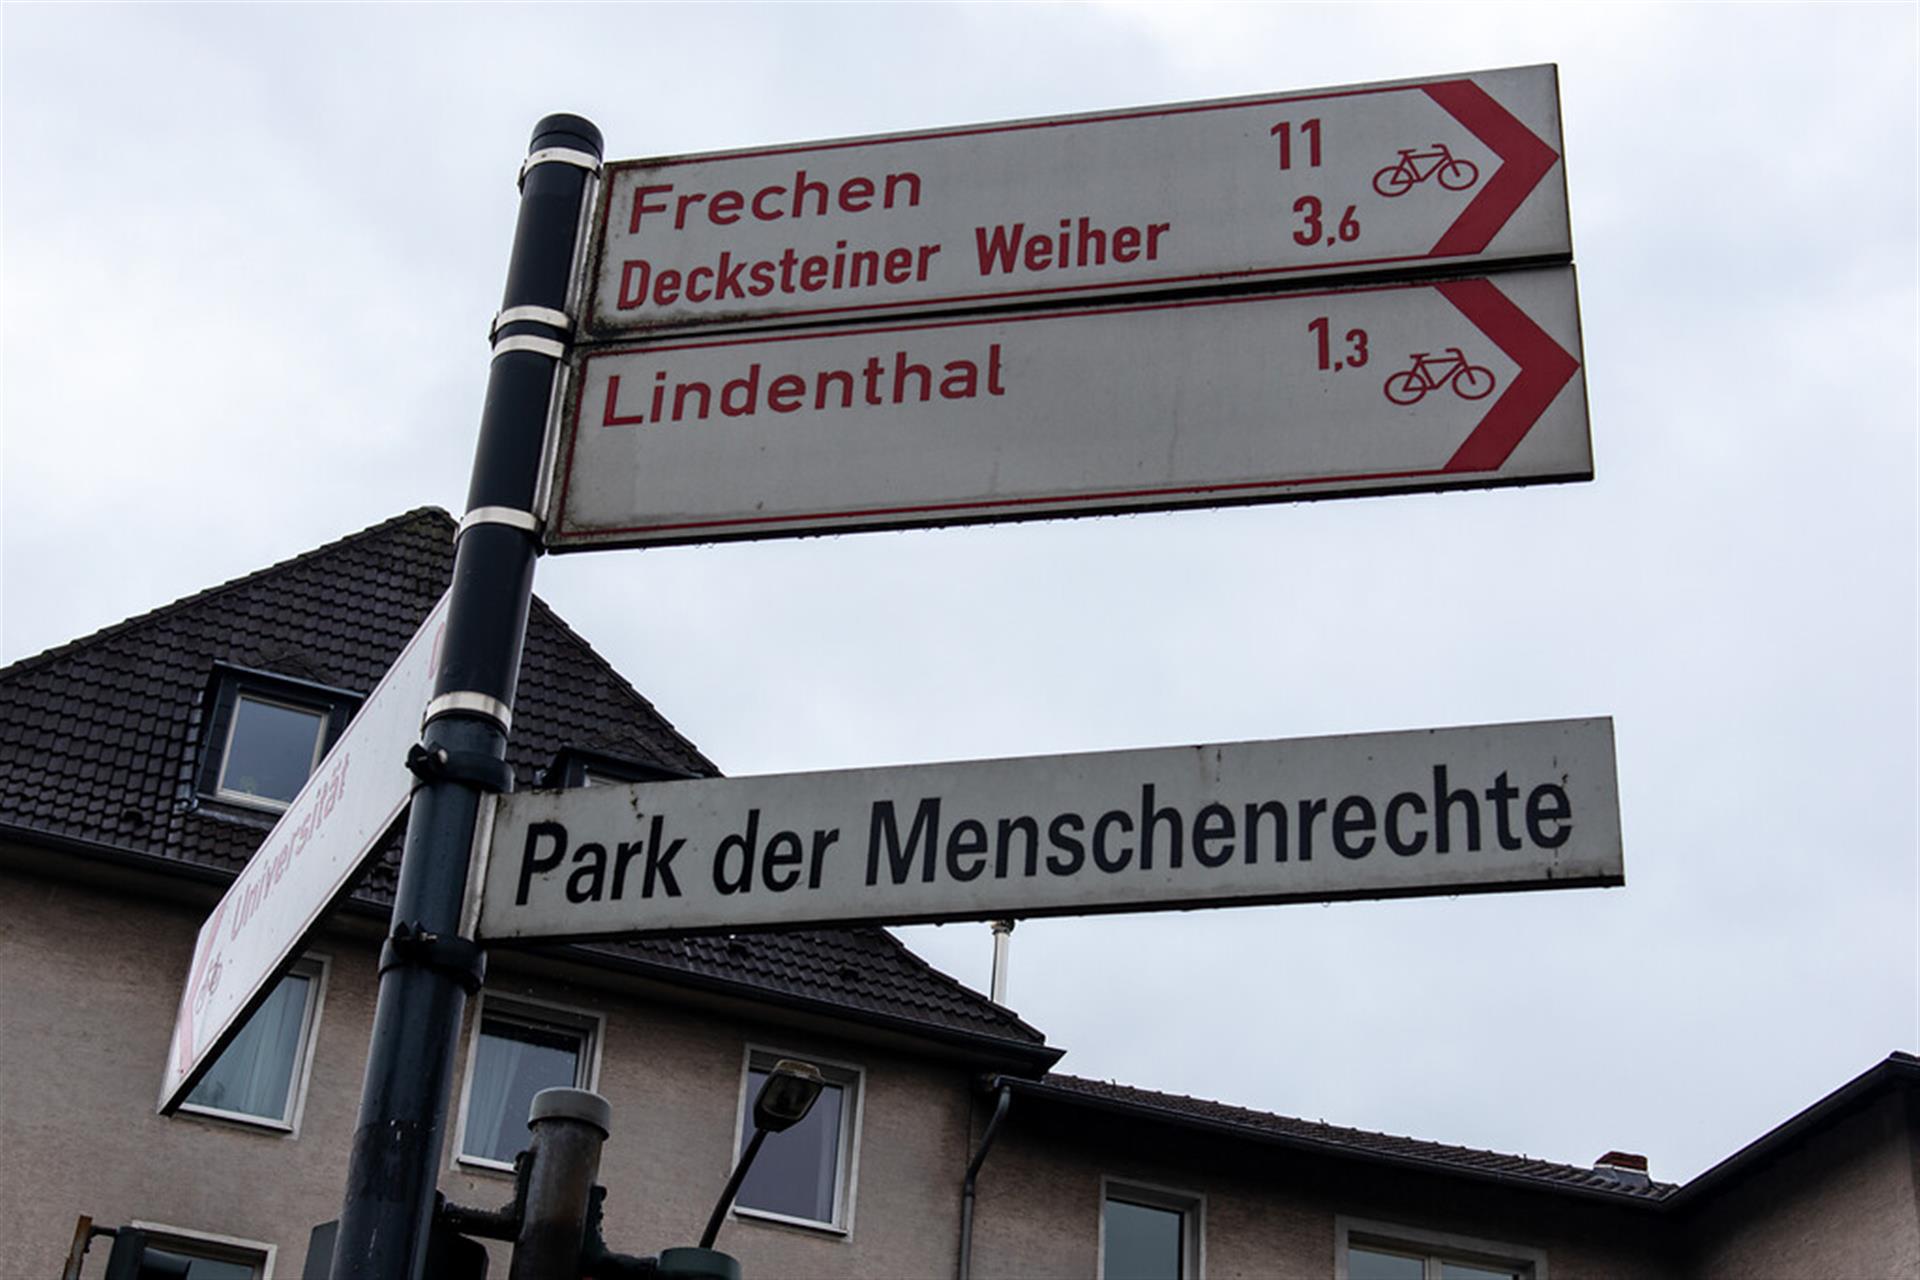 Das Straßenschild "Park der Menschenrechte" am Eingang des Parks befindet sich unter den Entfernungshinweisen für die Fahrradstrecken nach Lindenthal und Frechen zum Decksteiner Weiher. &copy; Janina Schwiderski / Landschaftsverband Rheinland / CC BY 4.0